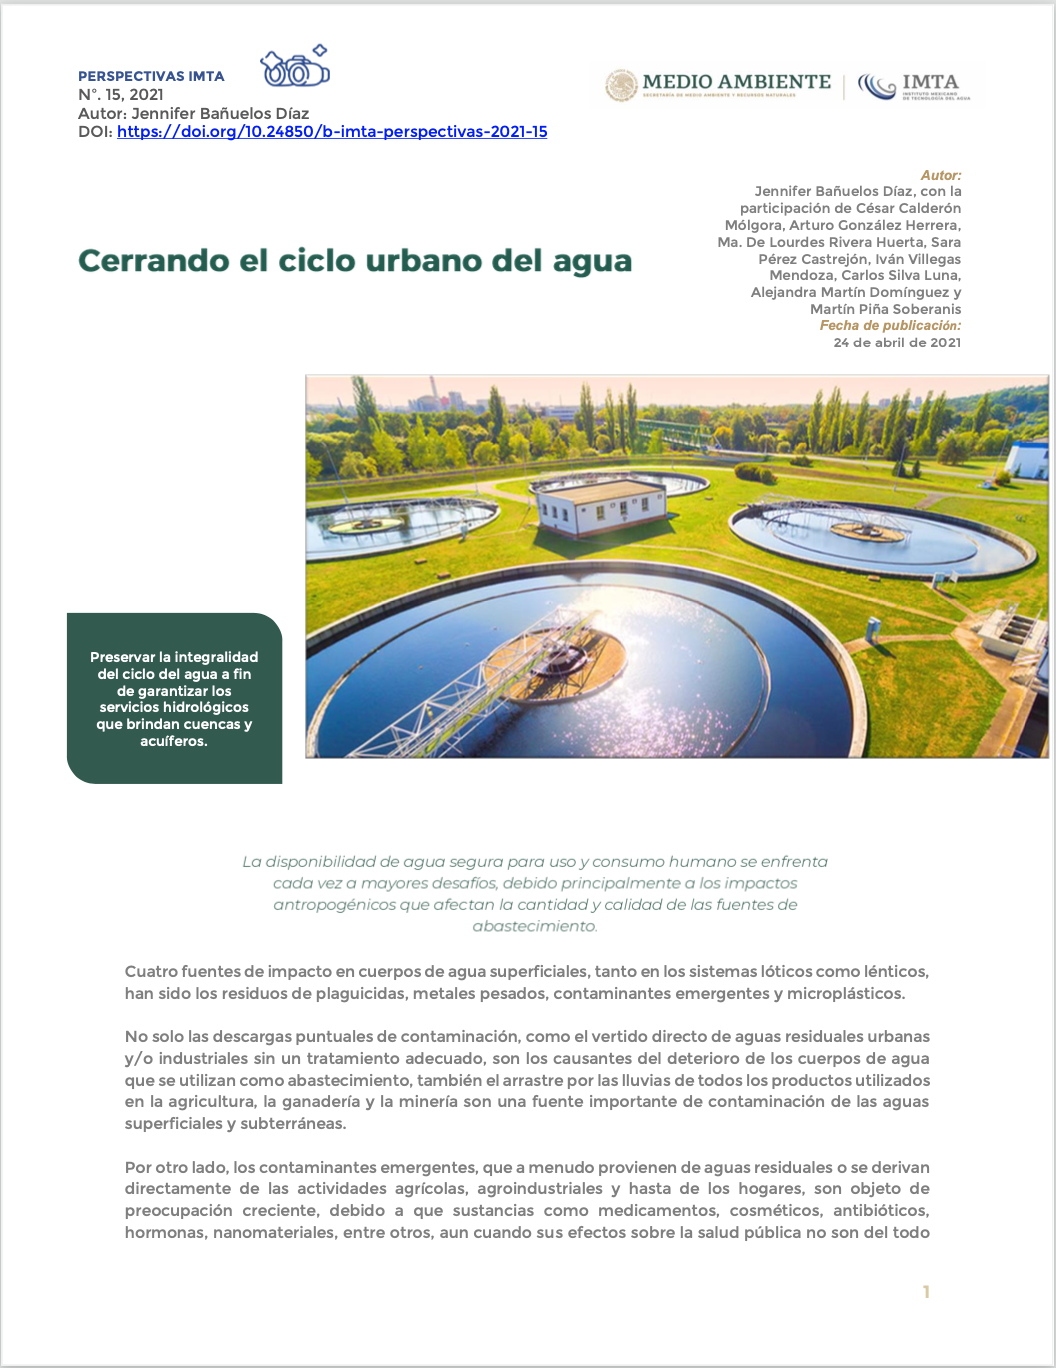 Gobierno de México- Cerrando el ciclo urbano del agua